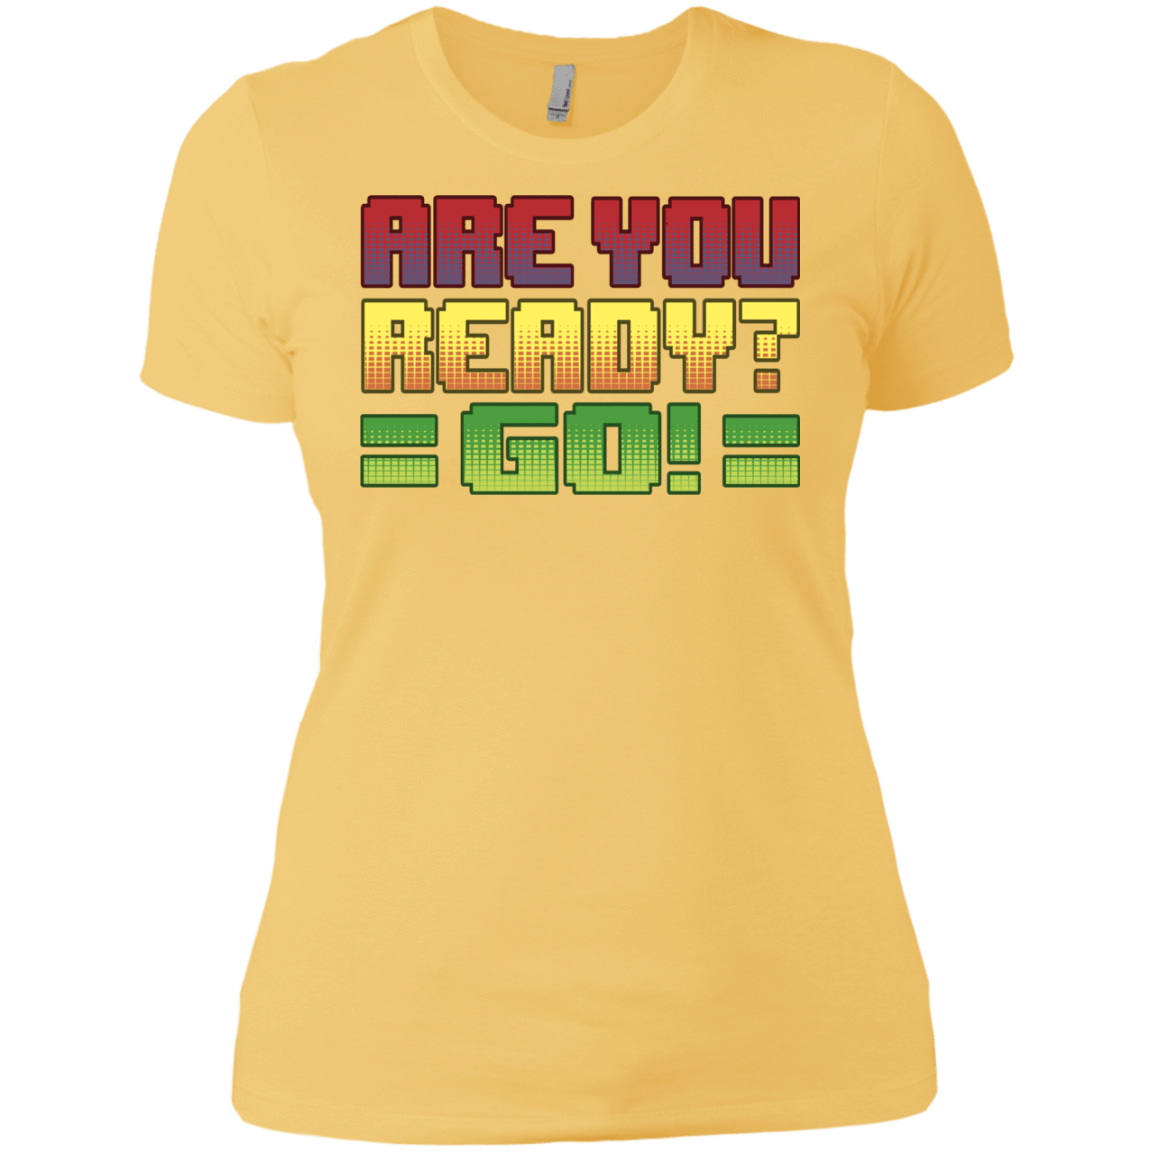 T-Shirts Banana Cream/ / X-Small Ready Women's Premium T-Shirt